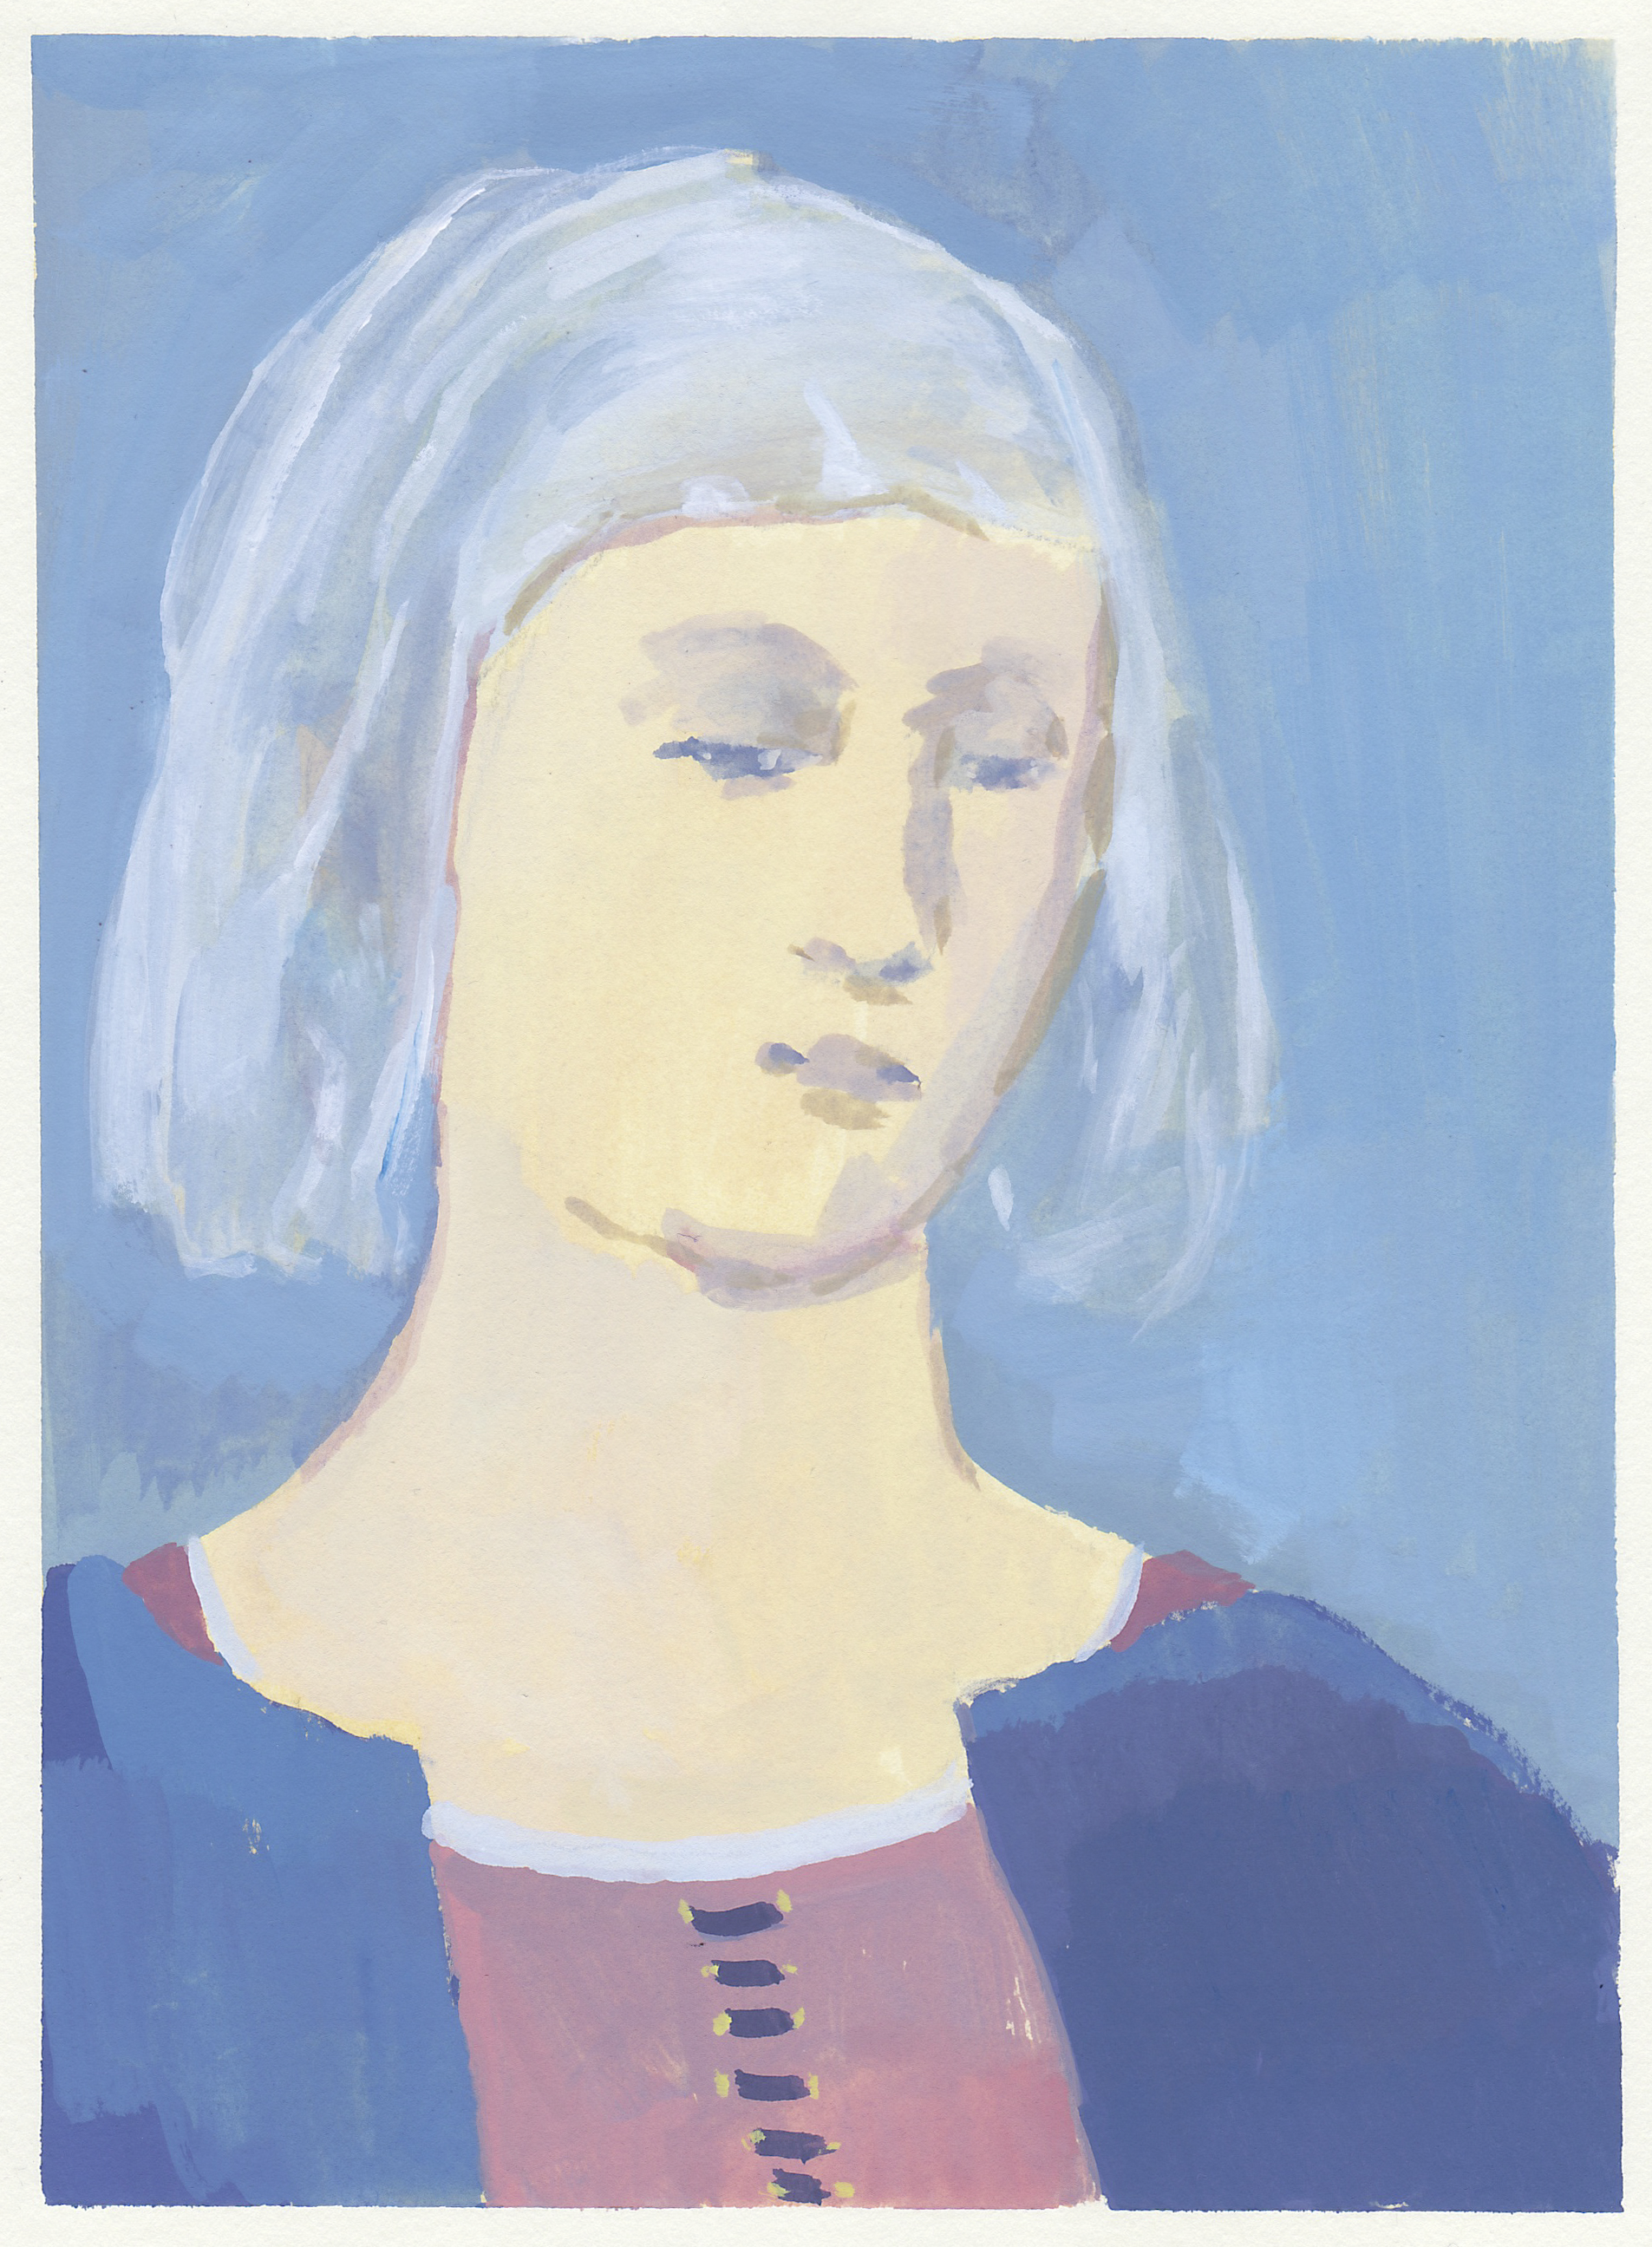    renaissance woman     (study after Piero) gouache on paper 6x8.25" 2017   purchase  